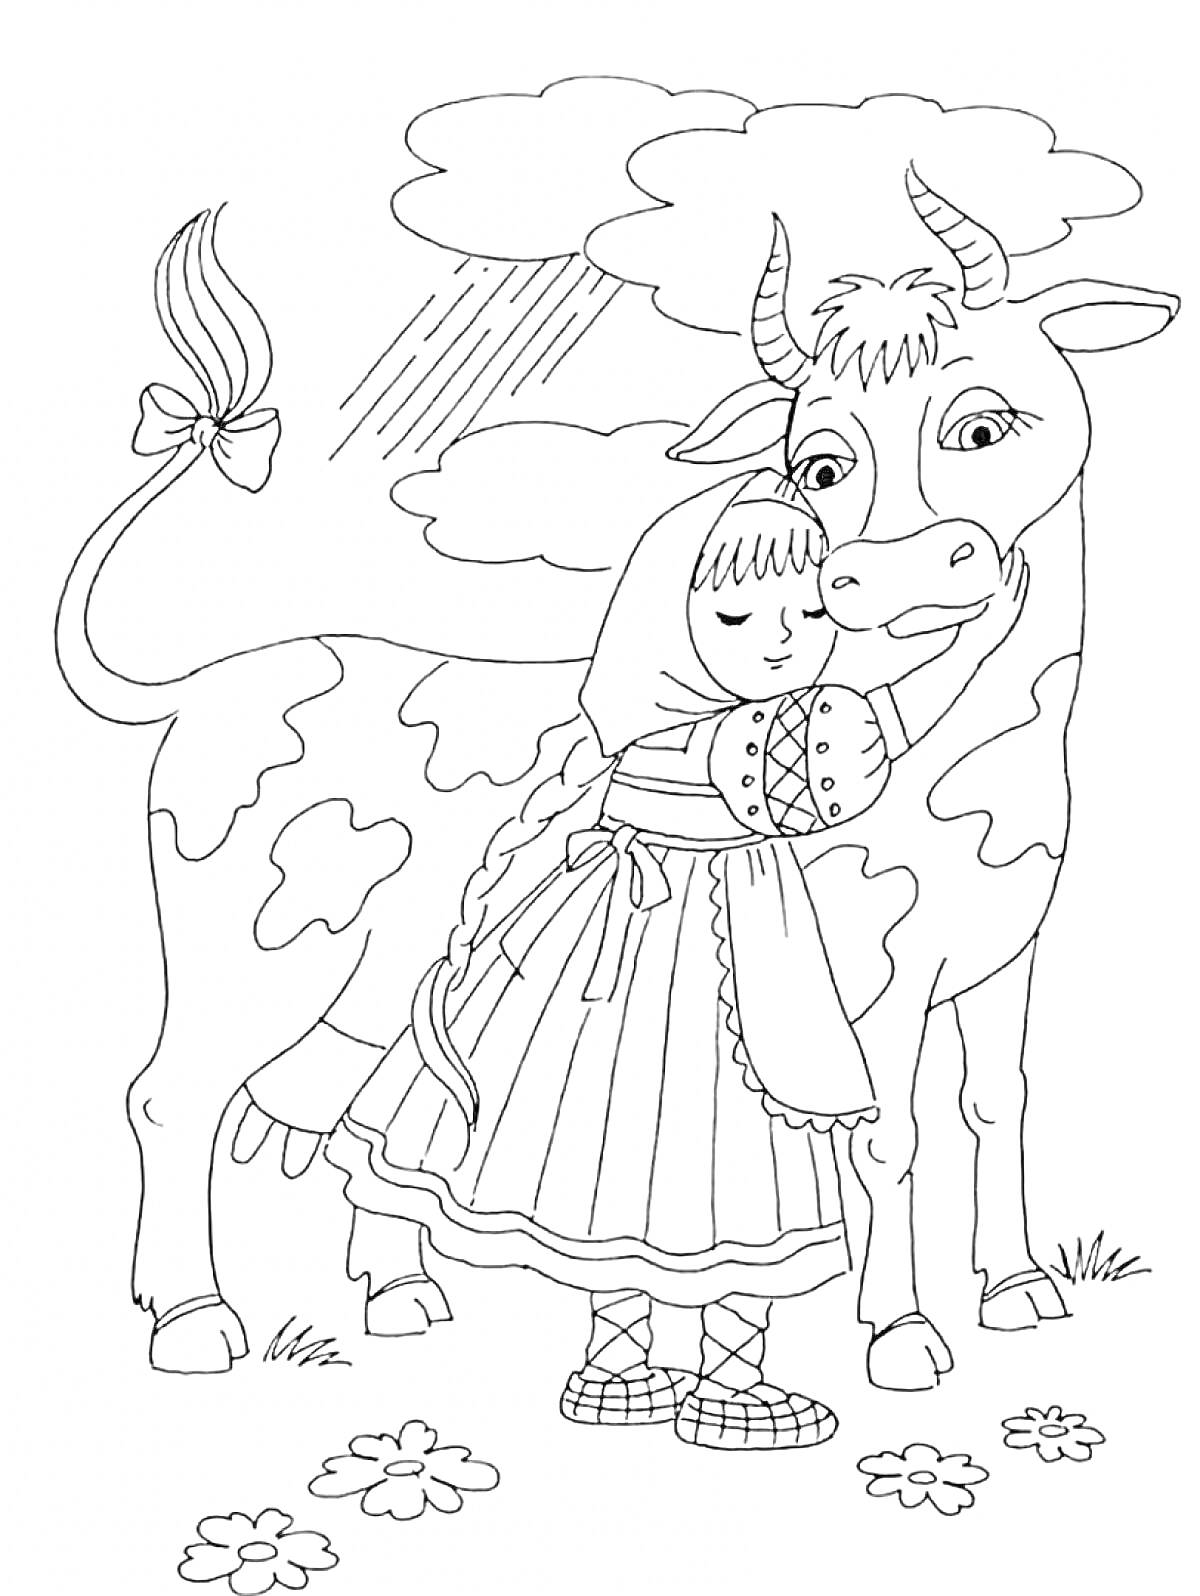 Раскраска Девочка в традиционной одежде с коровой, цветами, облаками и дождем